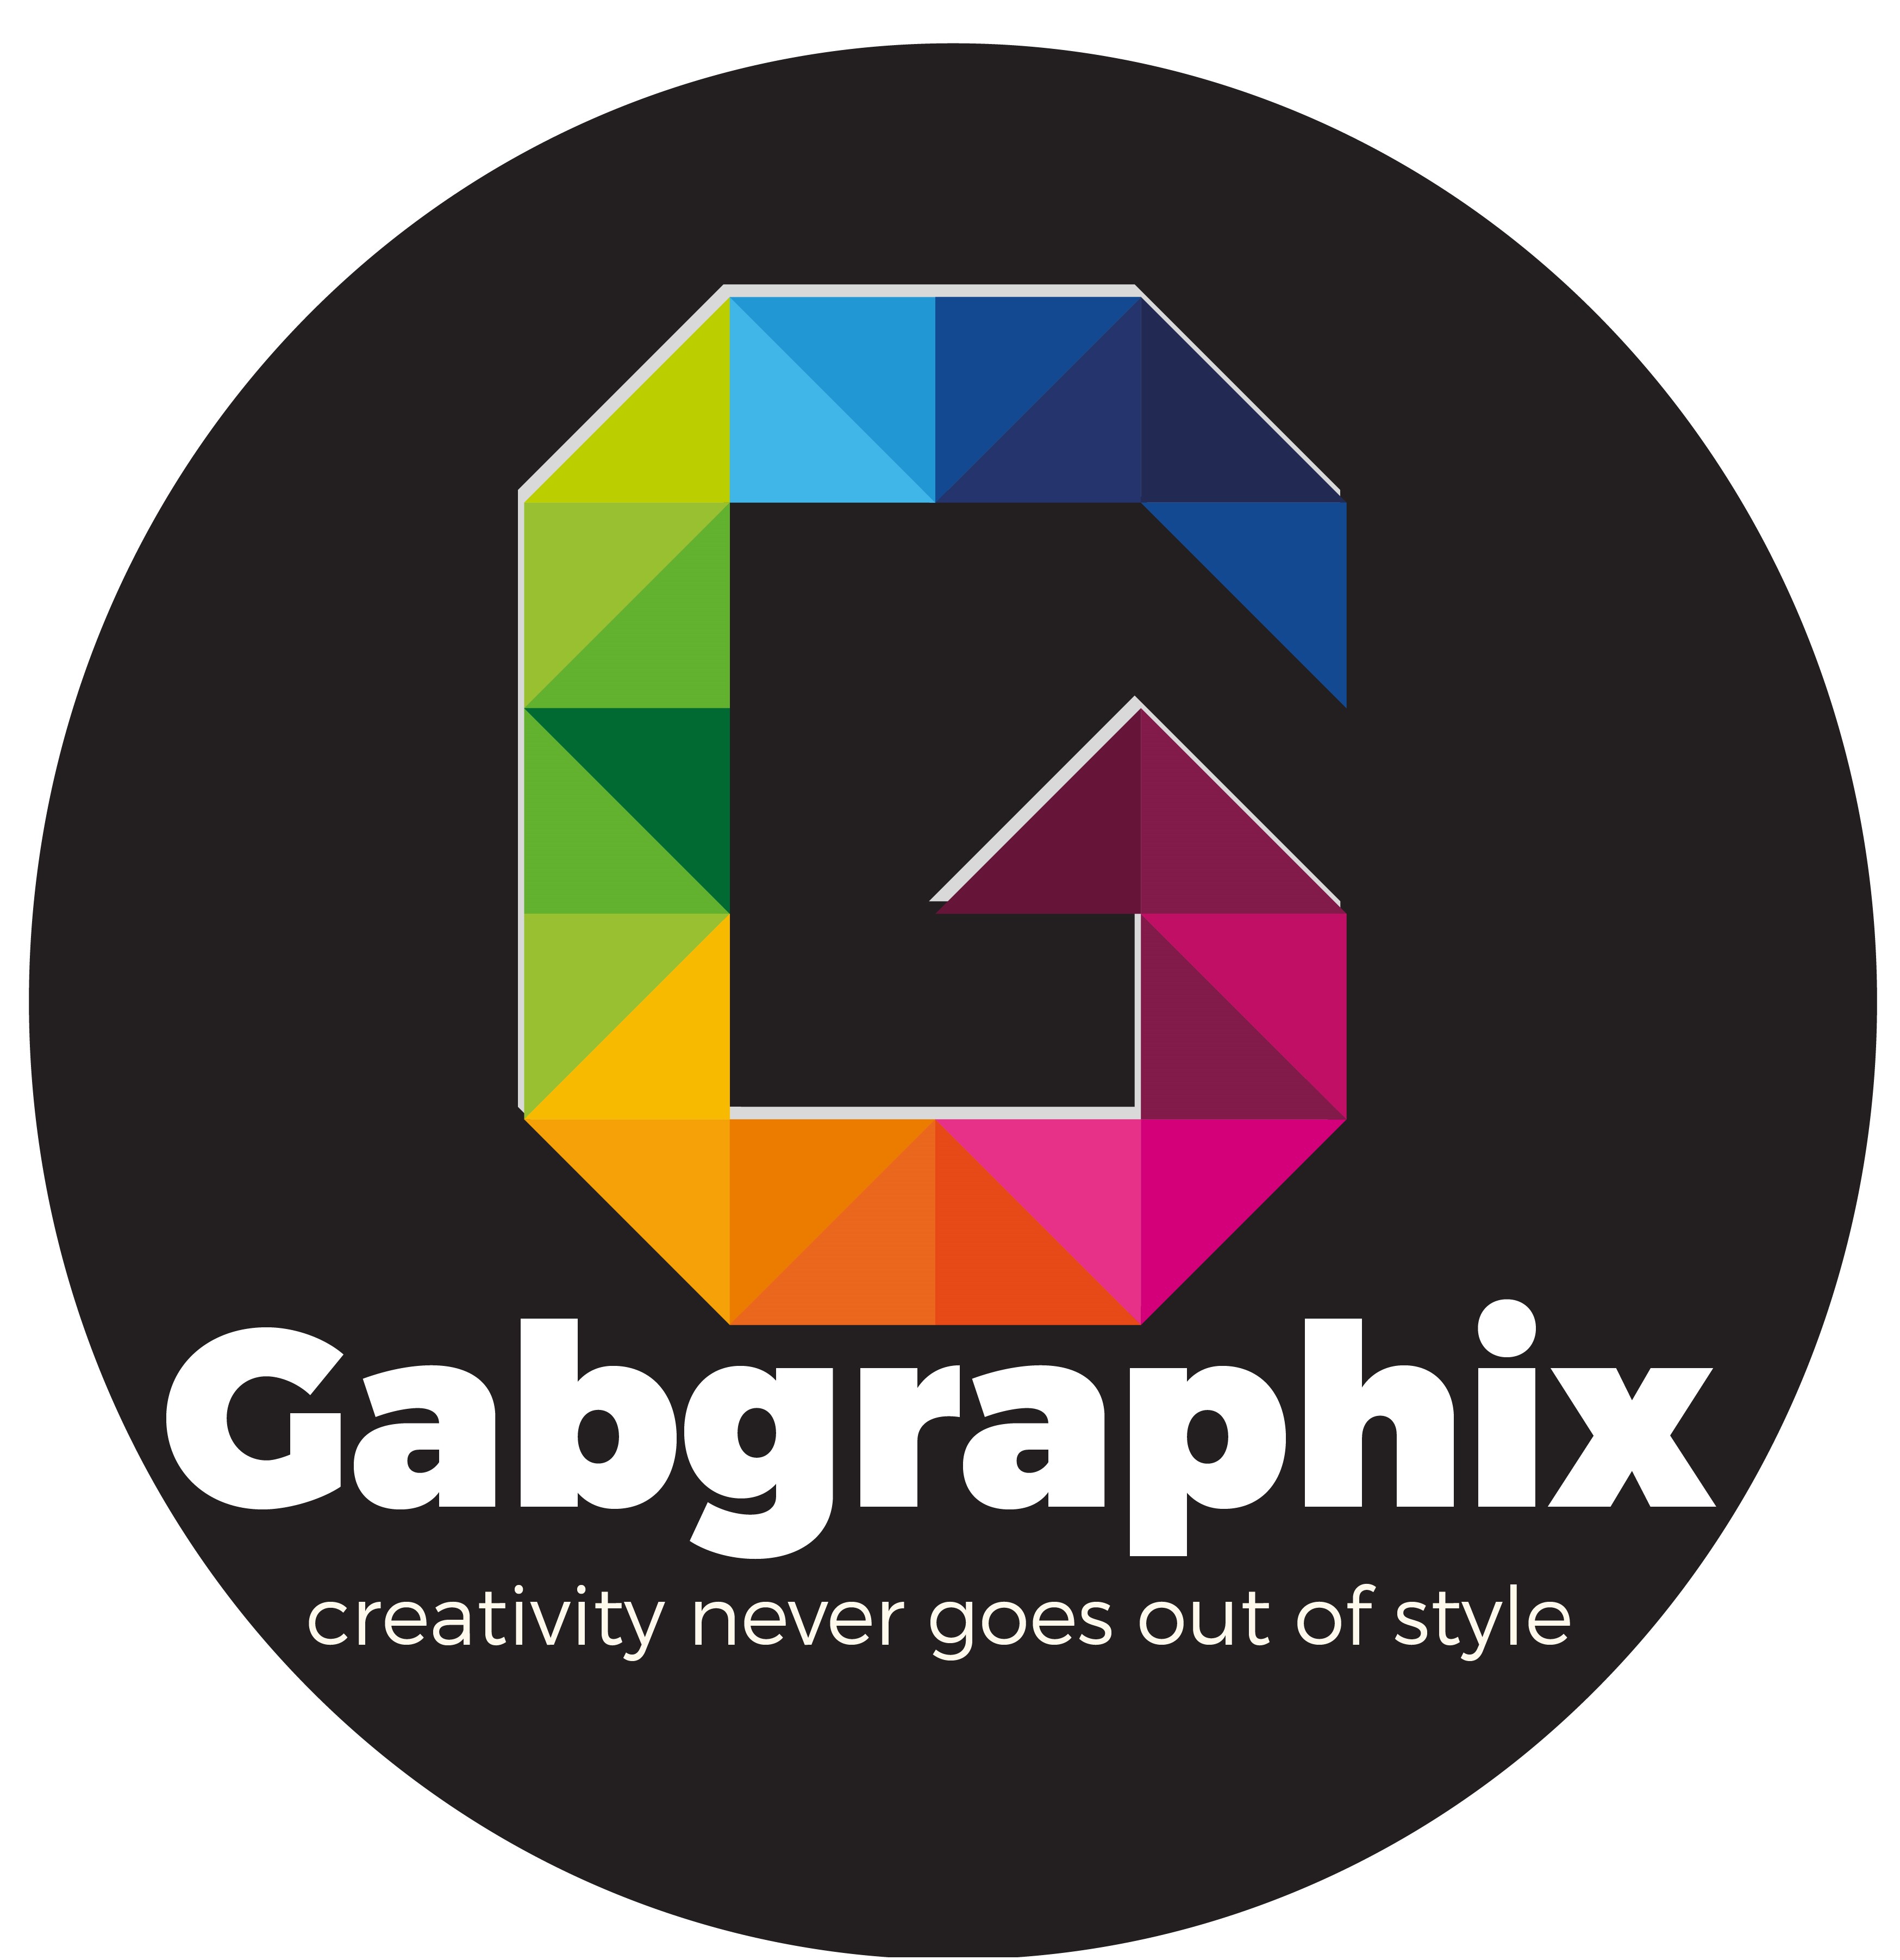 Gabgraphix provider